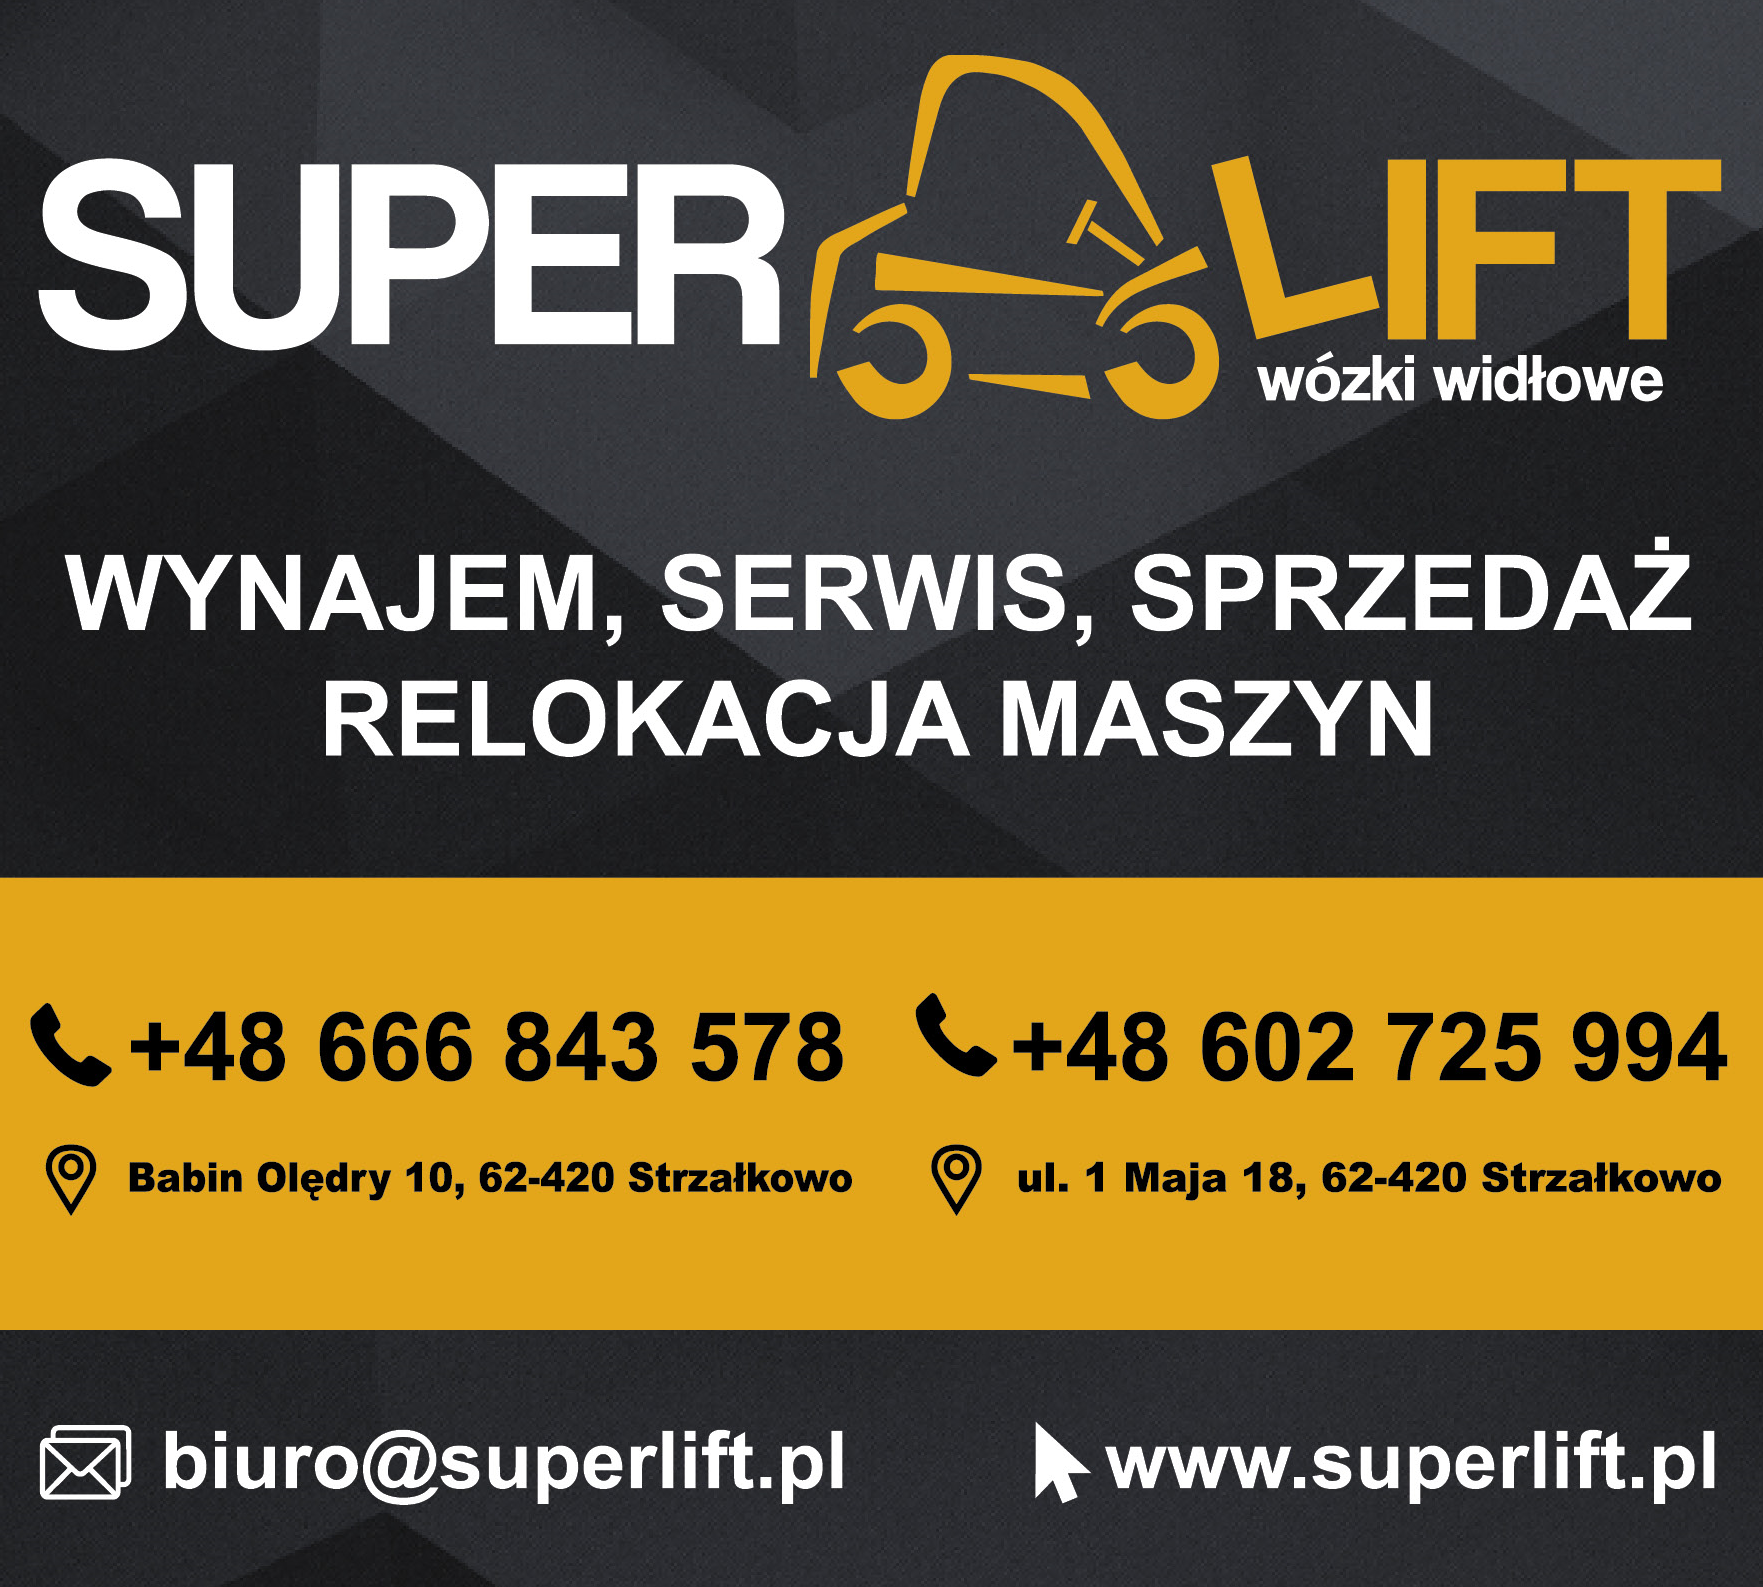 SUPERLIFT Wózki Widłowe Strzałkowo Wynajem / Serwis / Sprzedaż / Relokacja Maszyn